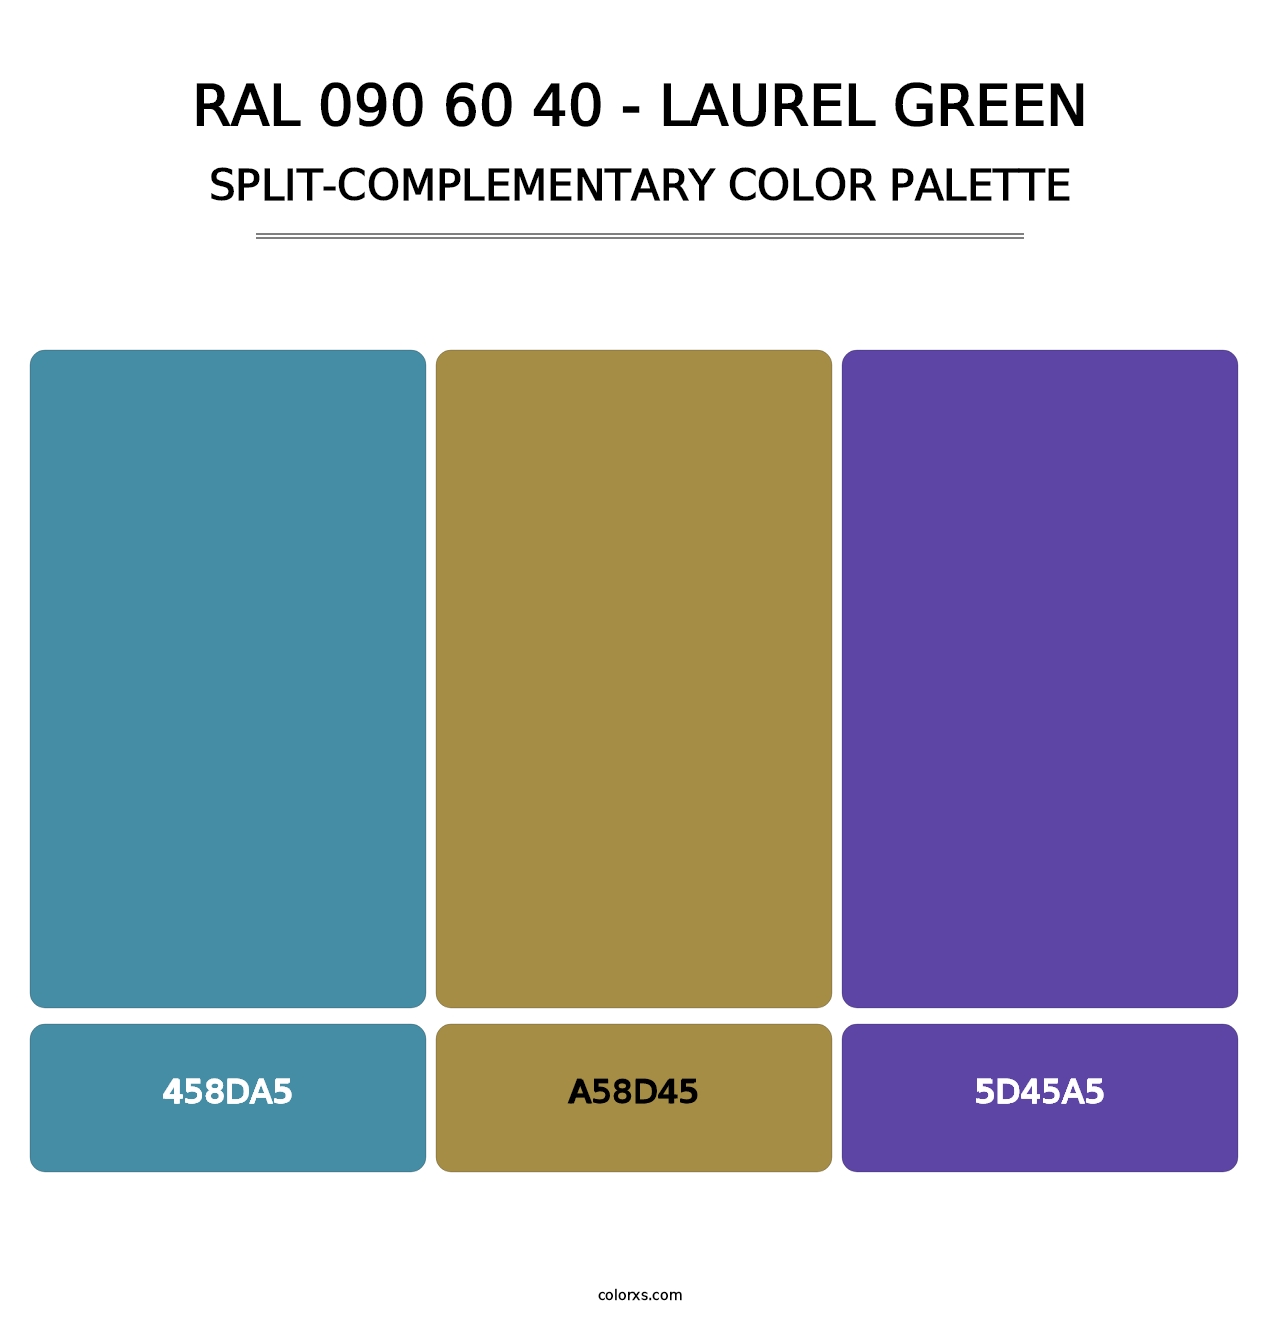 RAL 090 60 40 - Laurel Green - Split-Complementary Color Palette